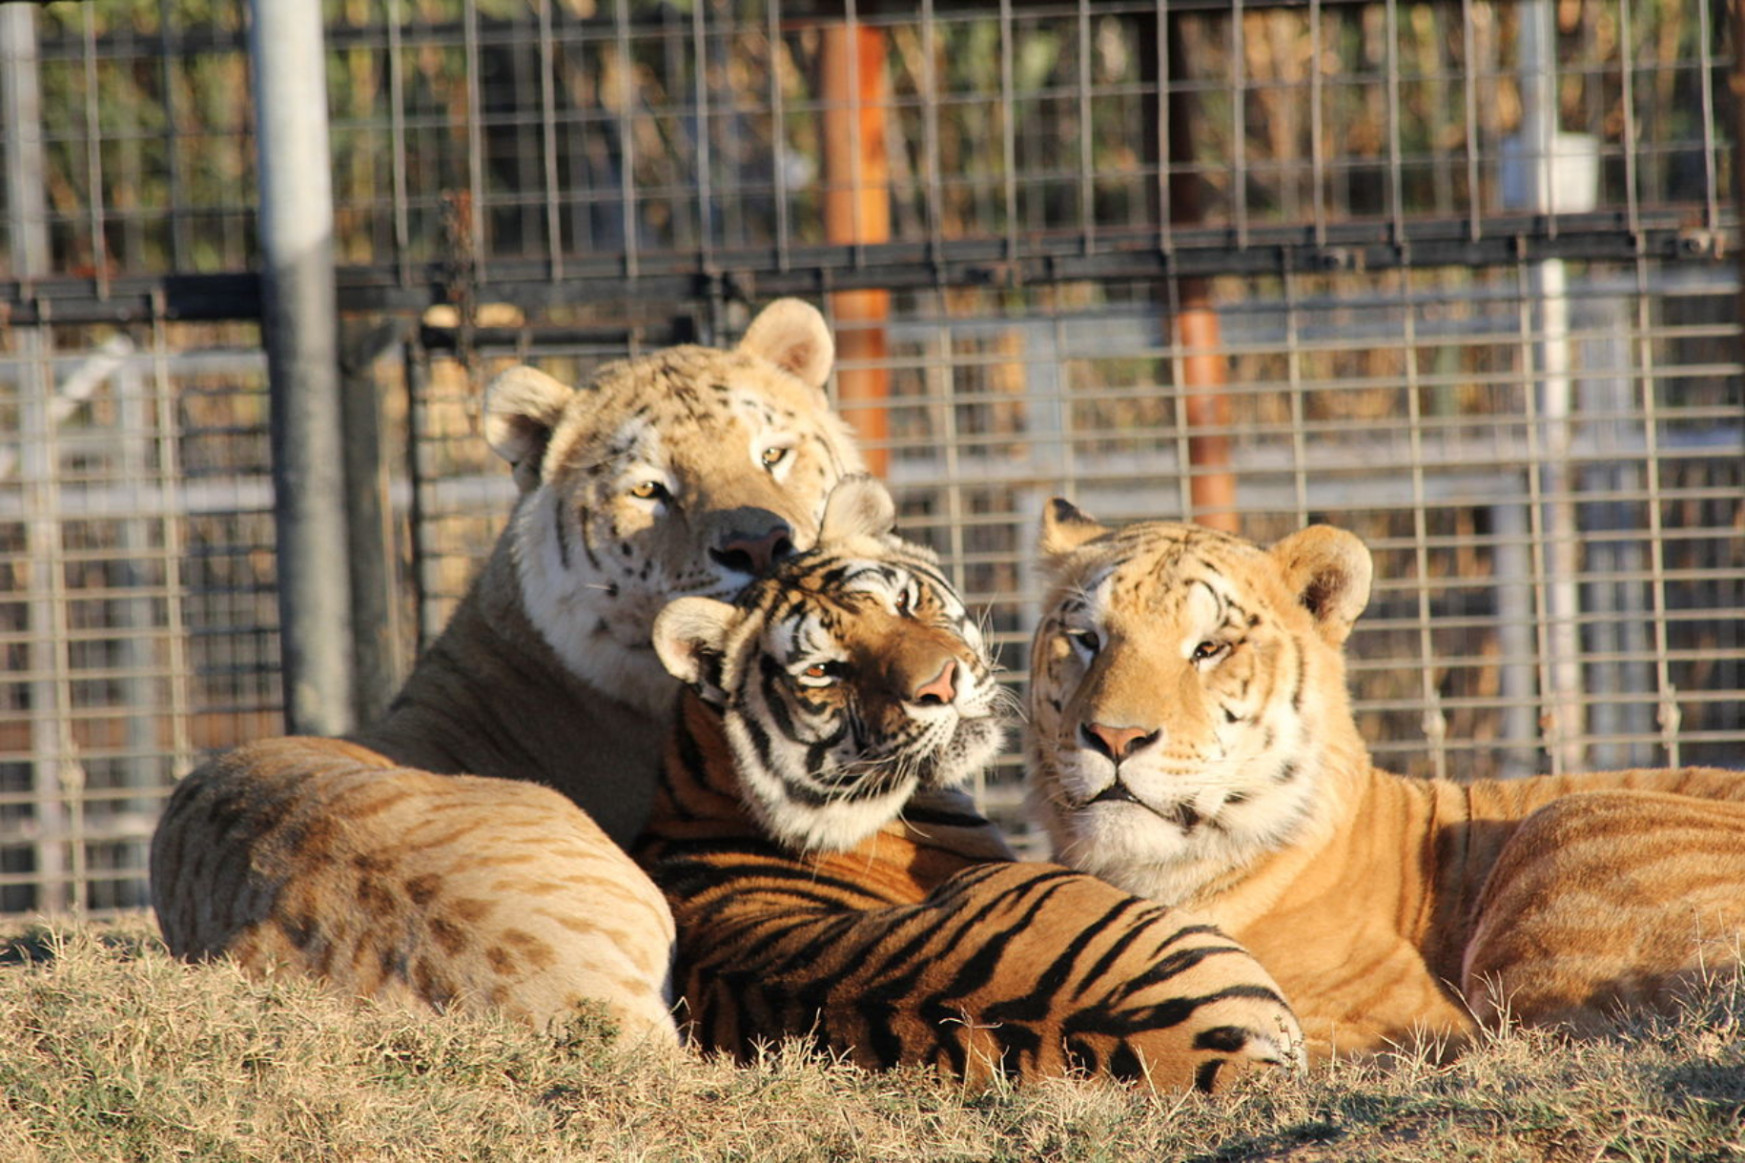 Megint nagymacskákat mentenek ki a Tiger Kingből ismert állatkertből